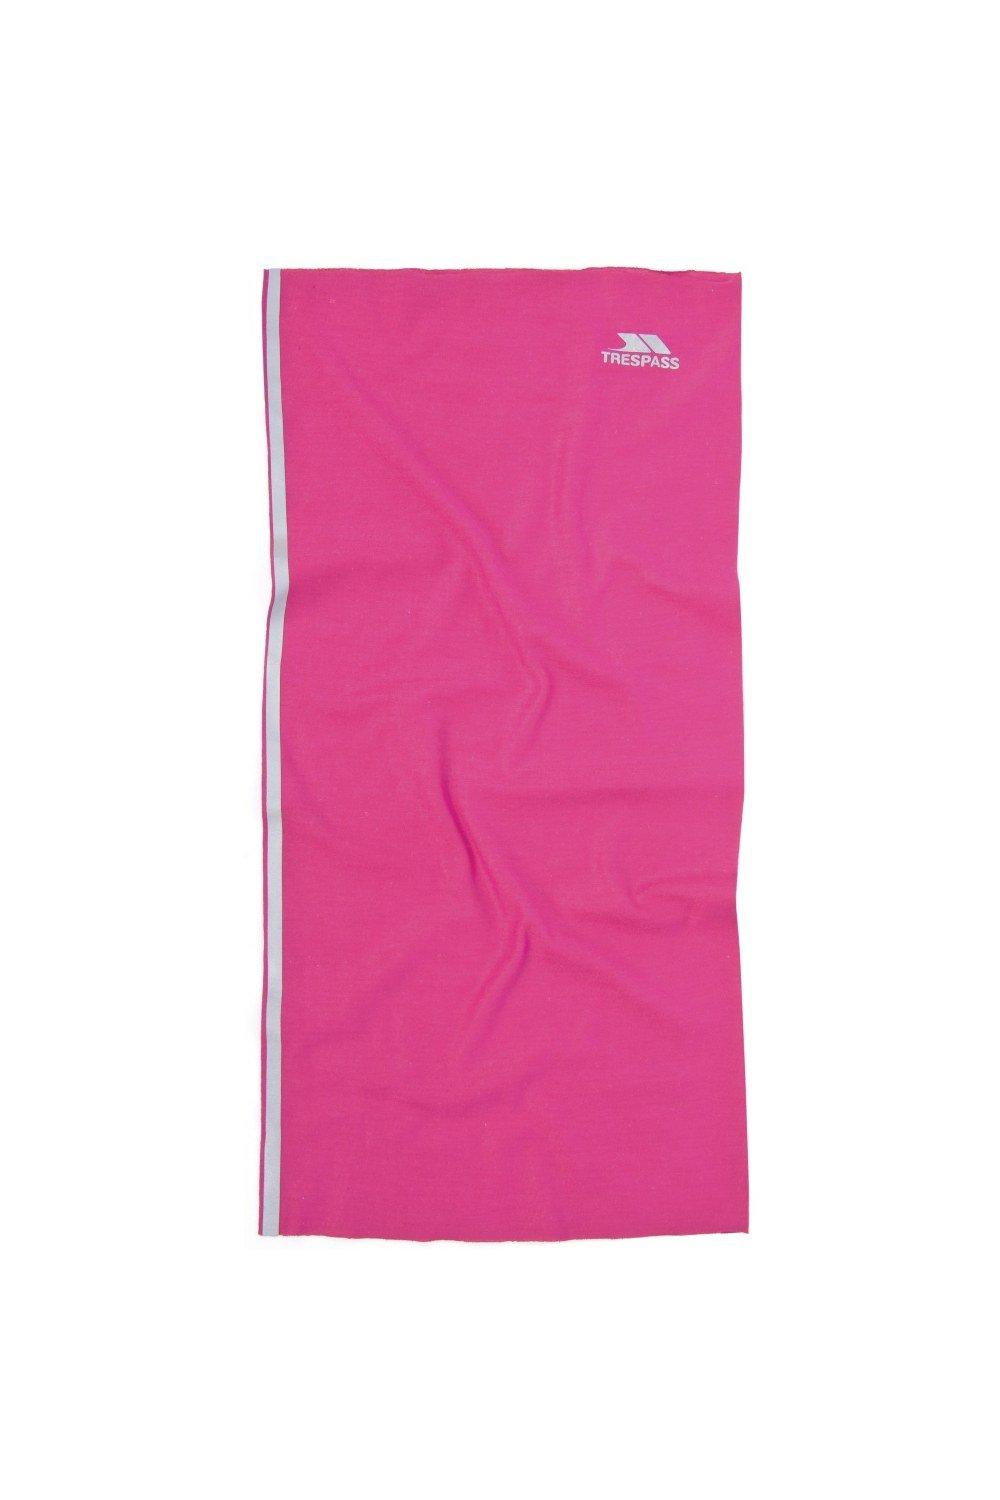 Многофункциональный шейный шарф Tattler Trespass, розовый шарф платок парео косынка 40 моделей для любого случая галстук бабочка шейный платок 20 стильных узлов на каждый день